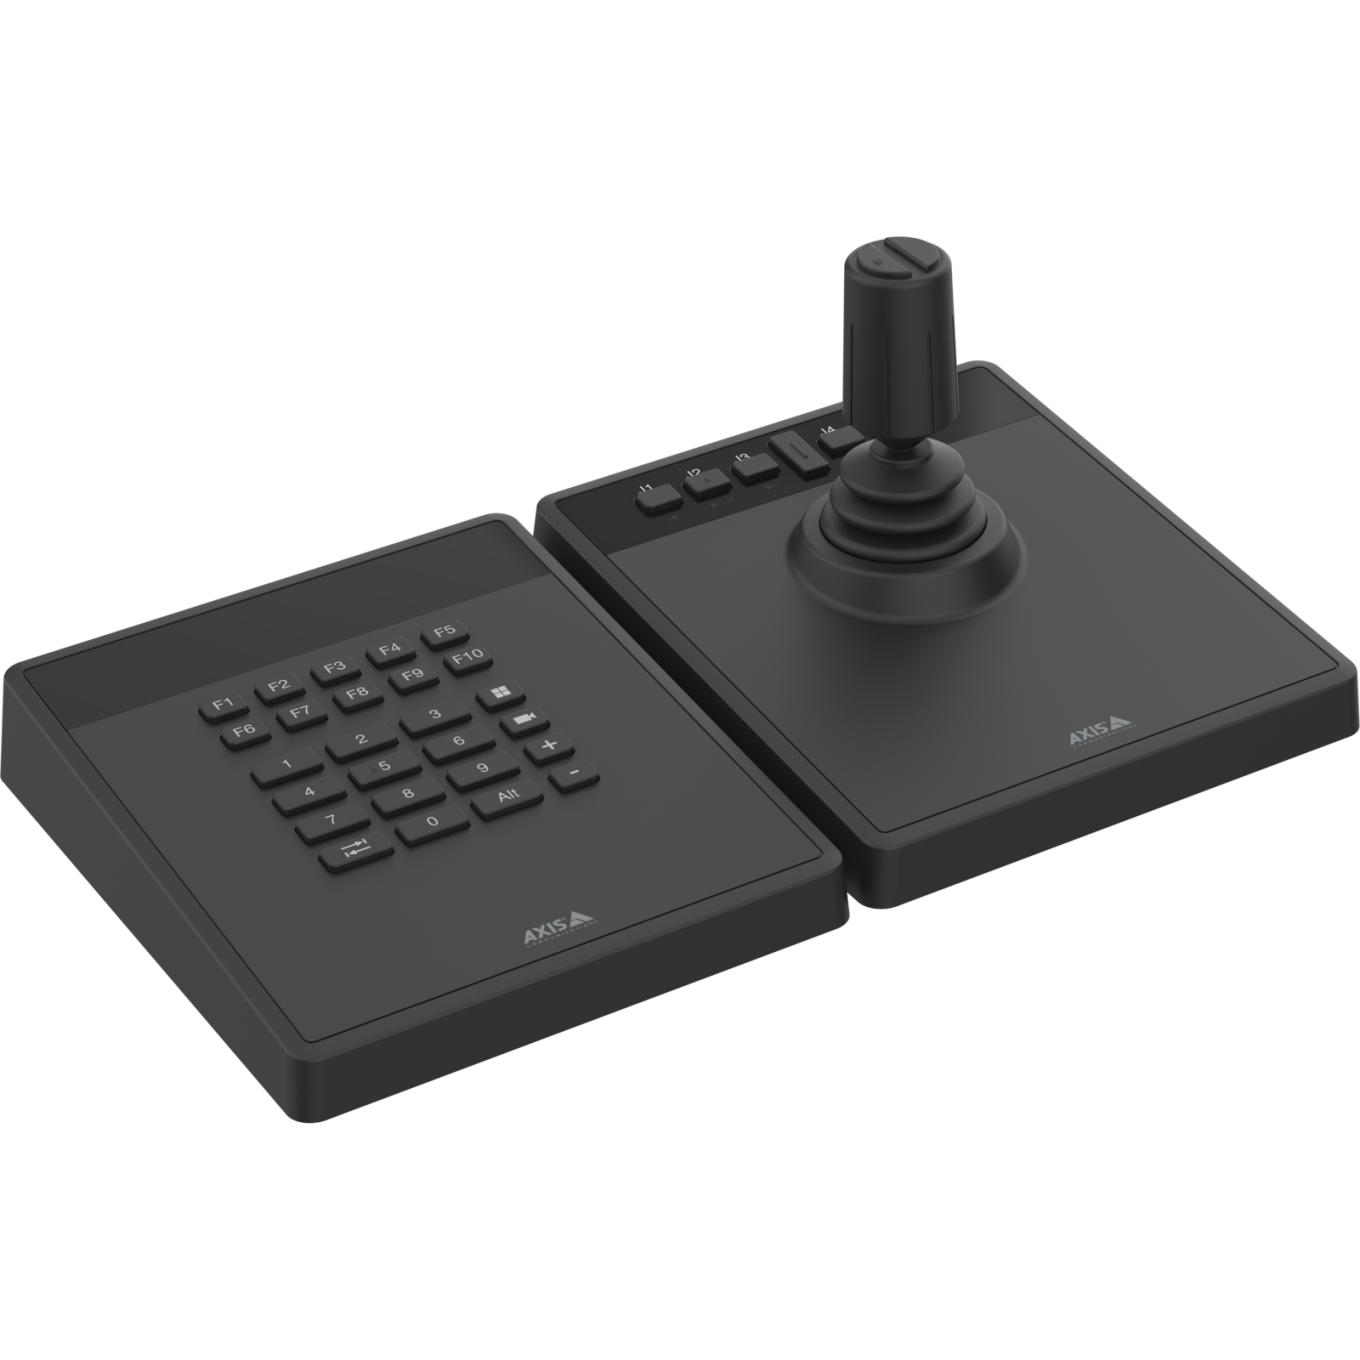 AXIS TU9001 Control Board para gerenciamento profissional de câmeras e vídeo, teclado e joystick próximos um ao outro, sem texto no visor LCD